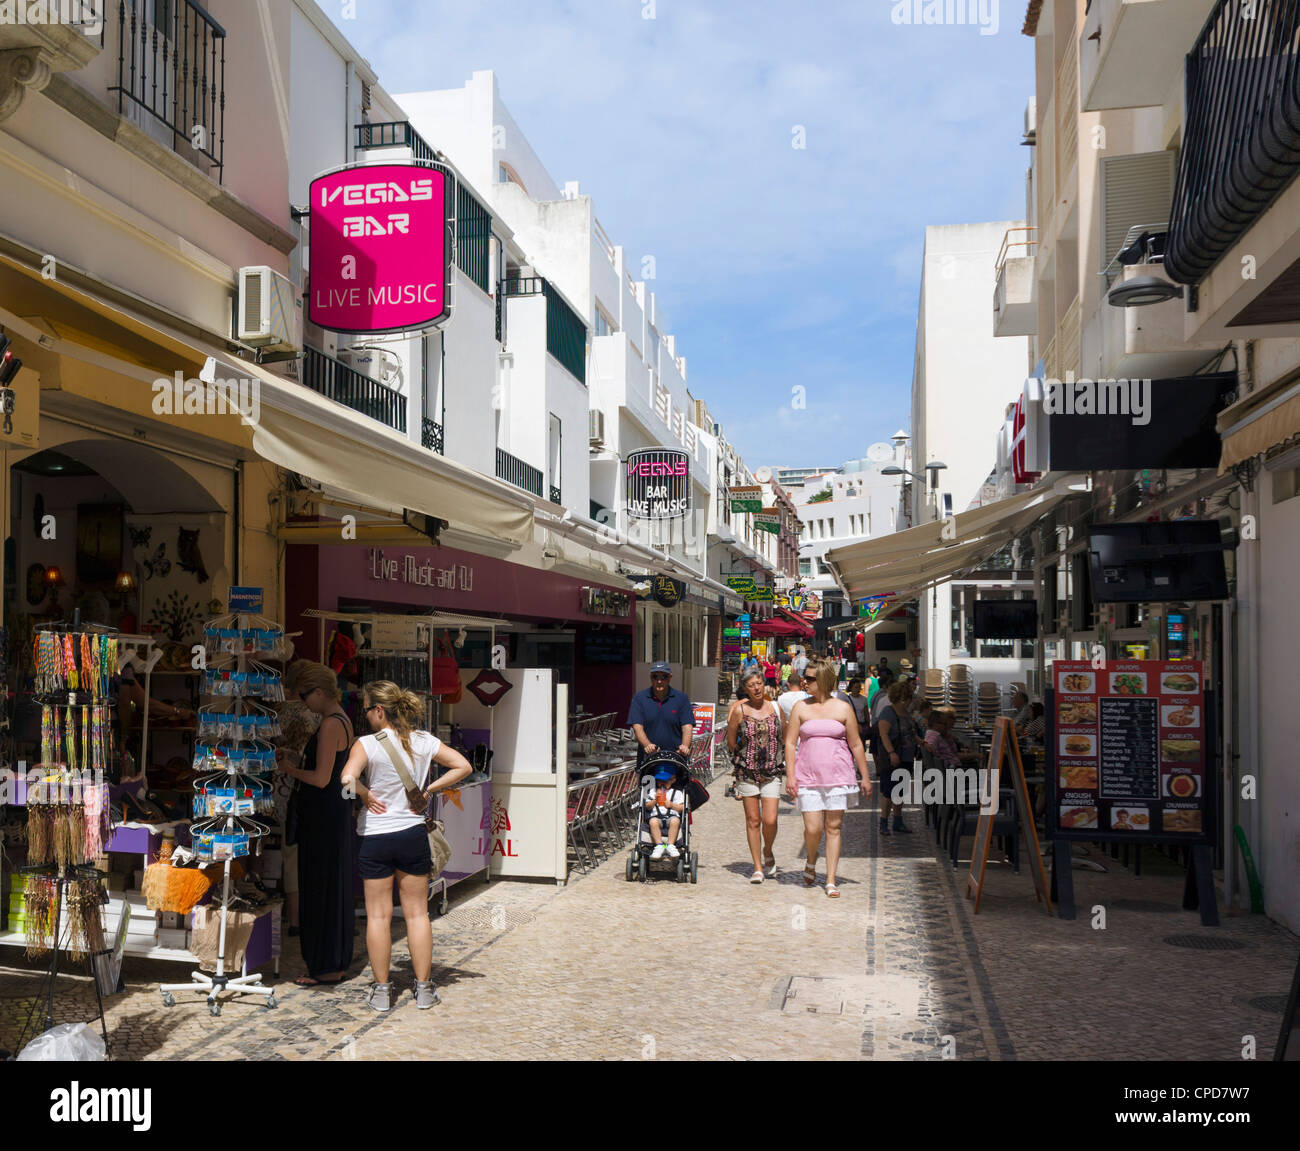 Geschäfte In Der Altstadt Im Zentrum Albufeira Algarve Portugal Stockfotografie Alamy 7183